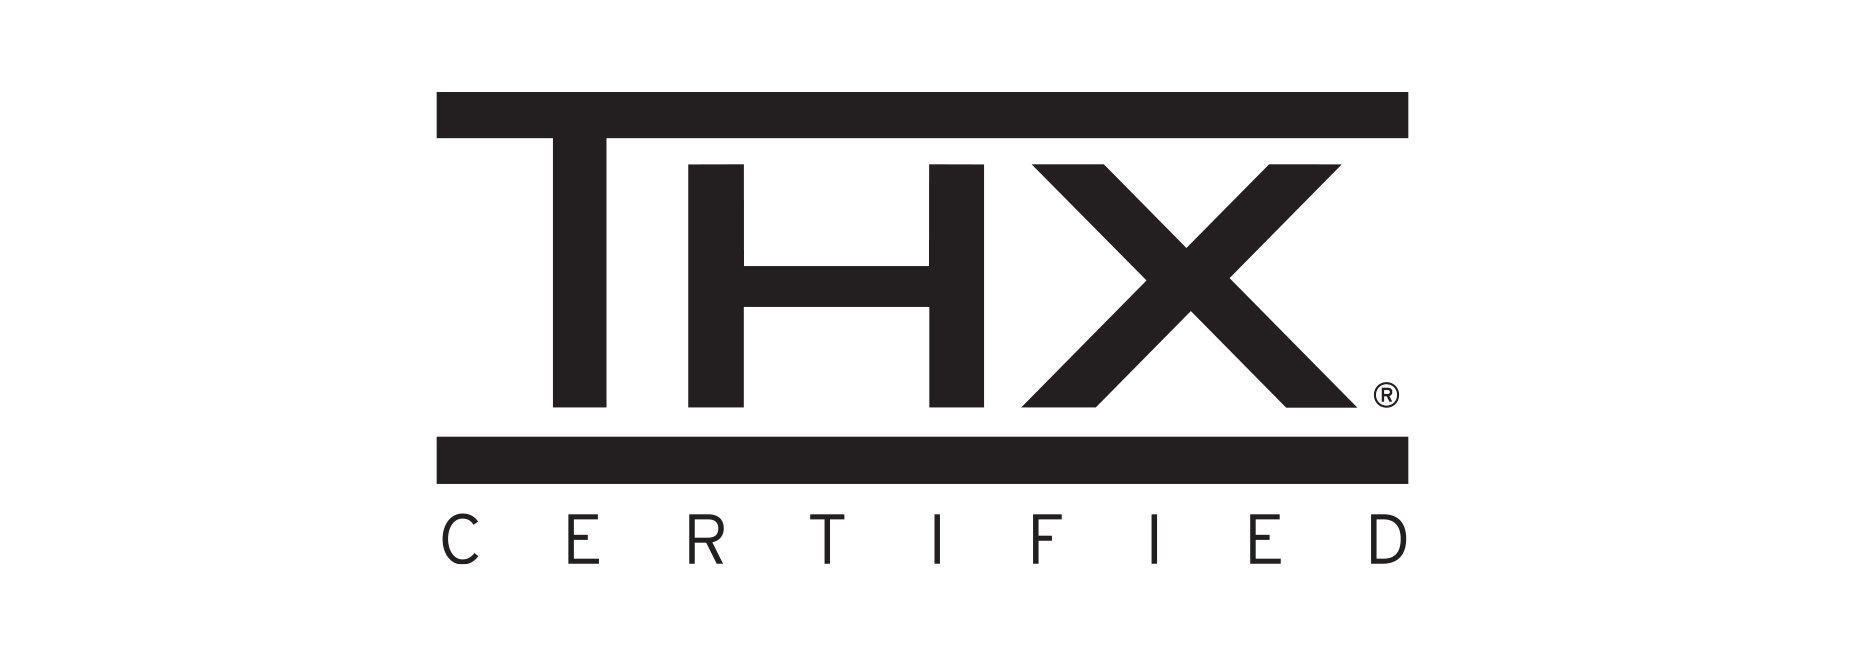 Certified by THX